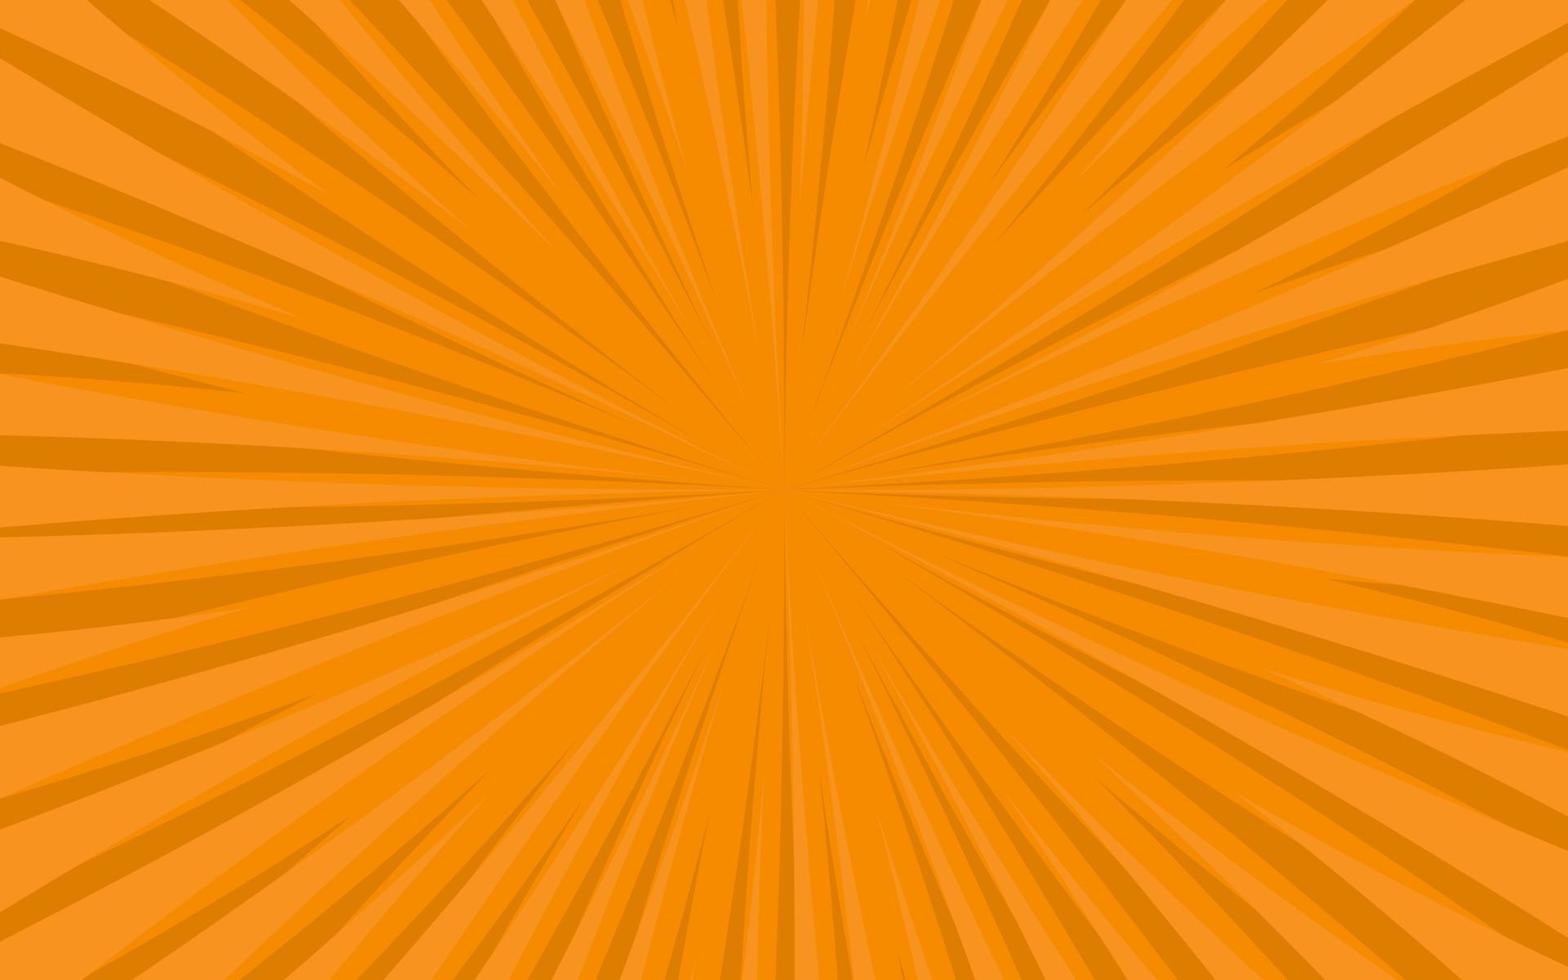 Sonnenstrahlen im Retro-Vintage-Stil auf orangefarbenem Hintergrund, Sunburst-Comic-Musterhintergrund. Strahlen. Sommer-Banner-Vektor-Illustration vektor